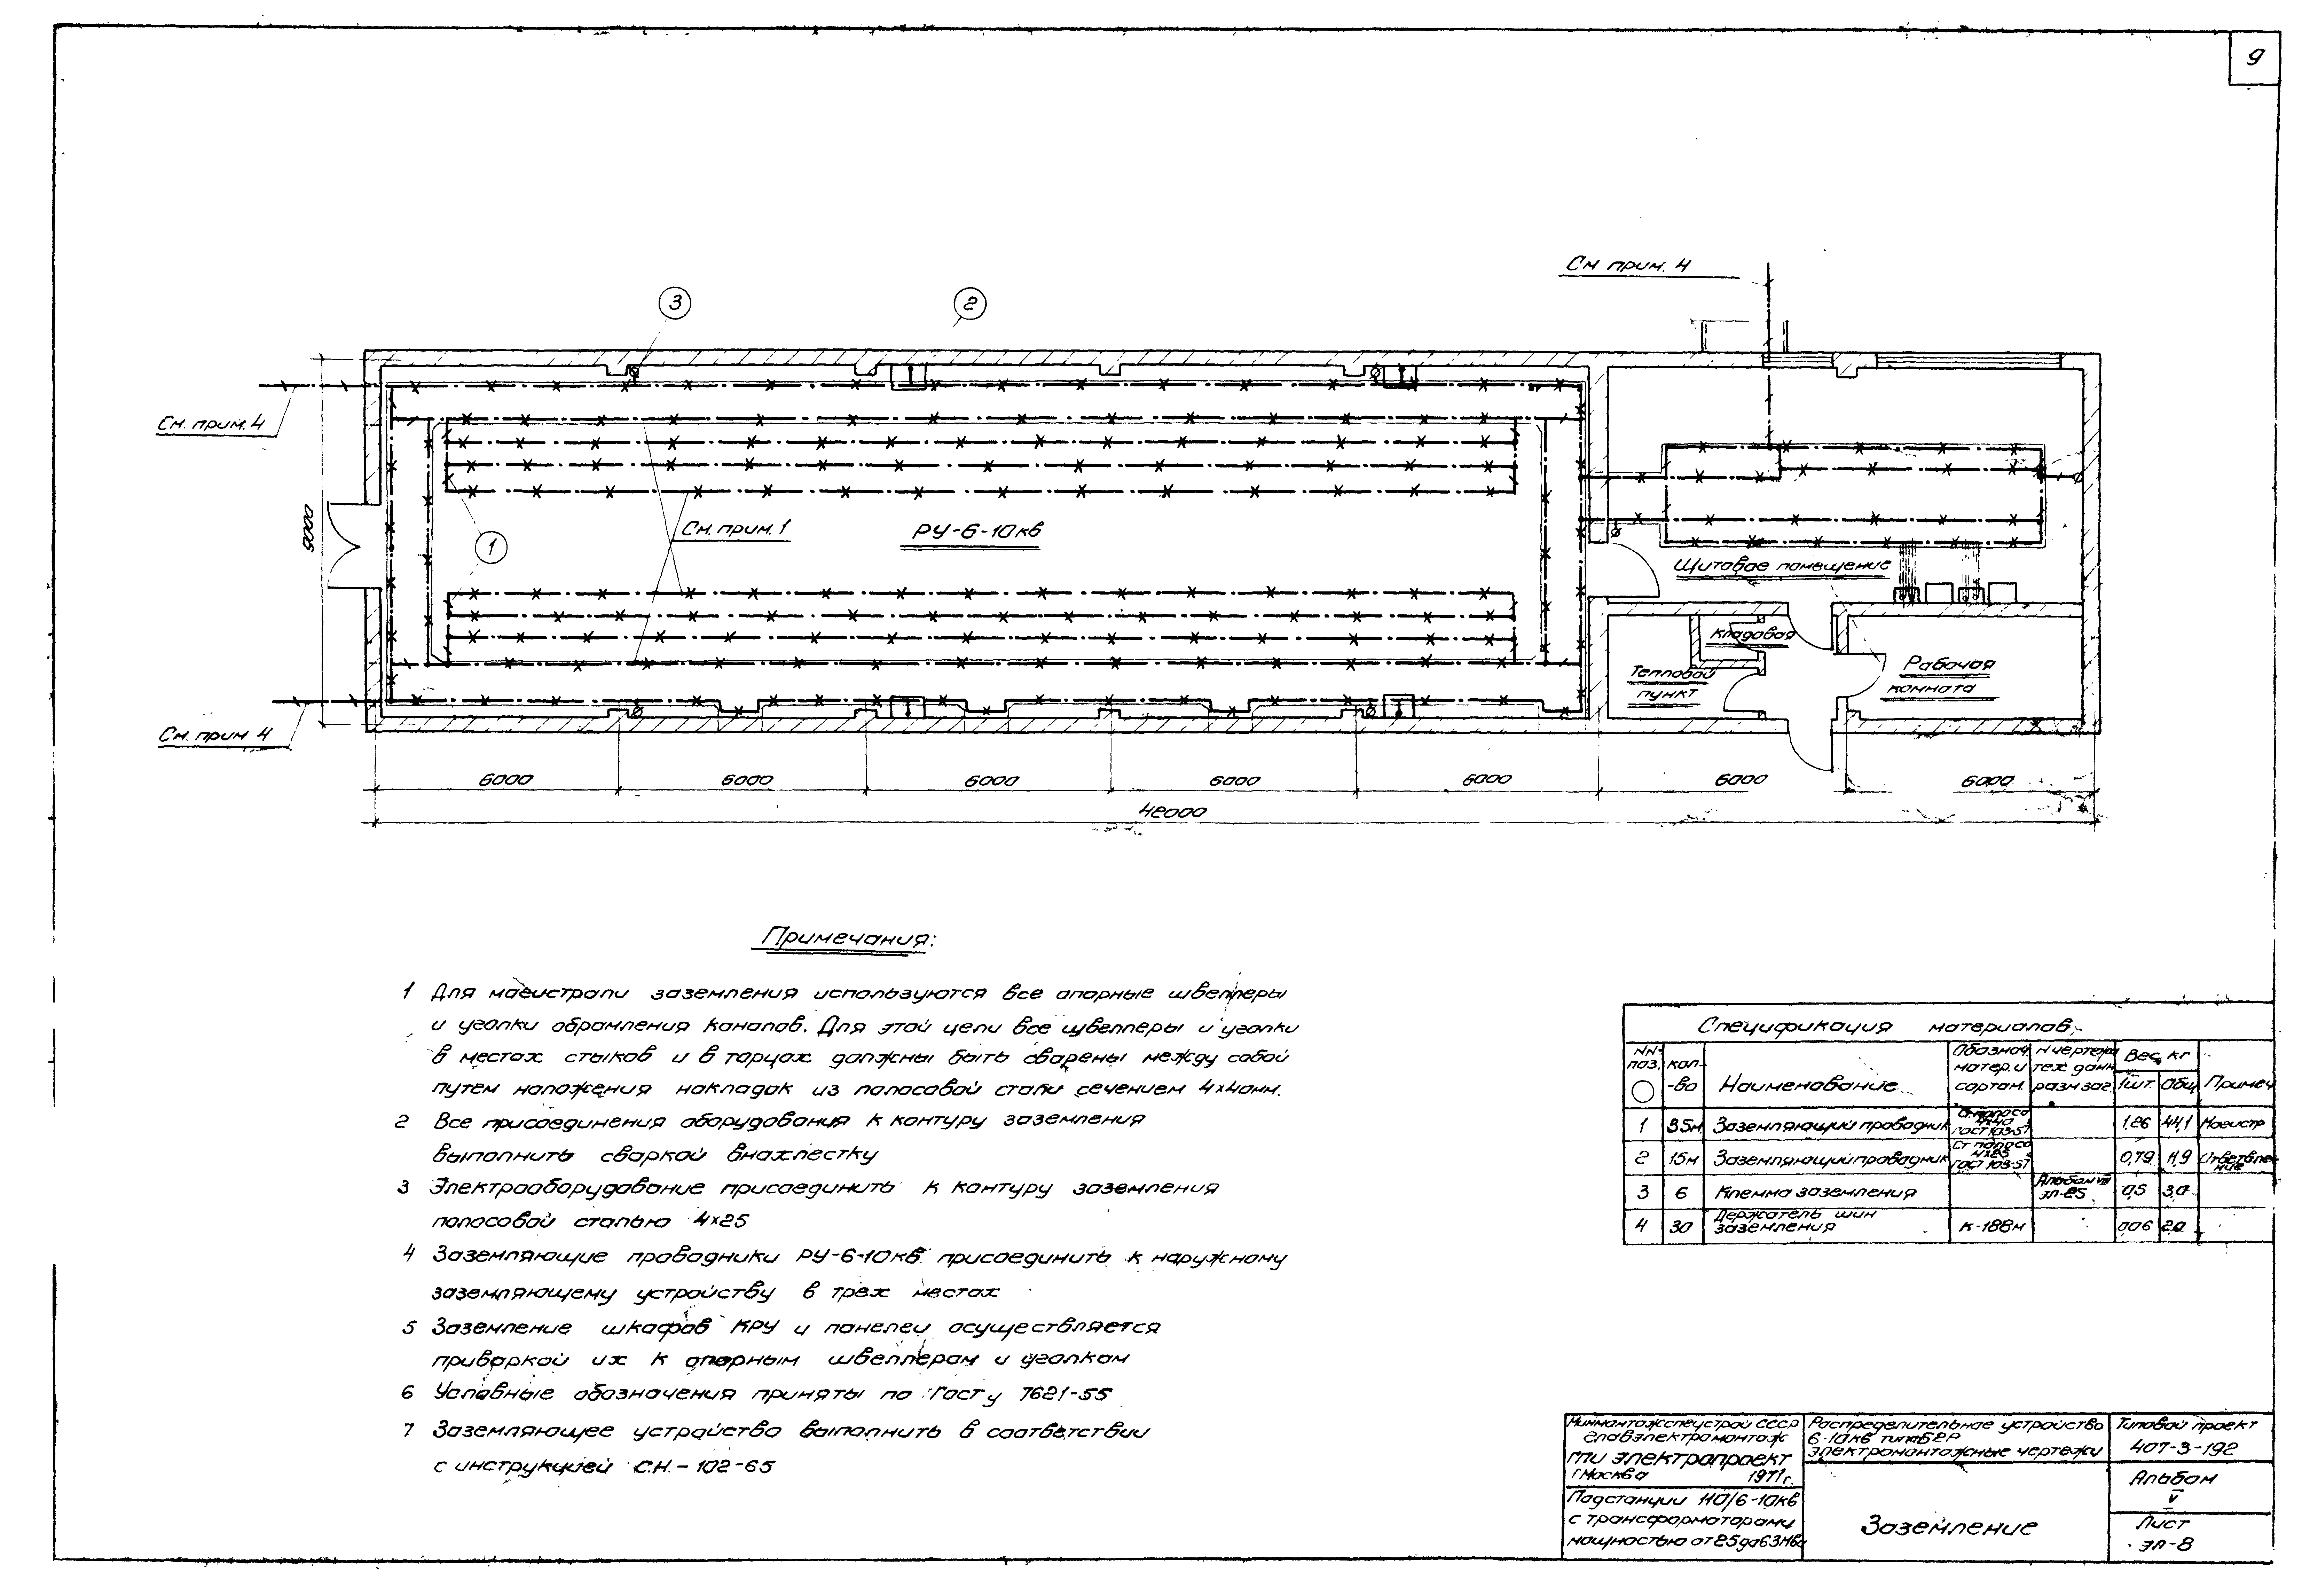 Типовой проект 407-3-192